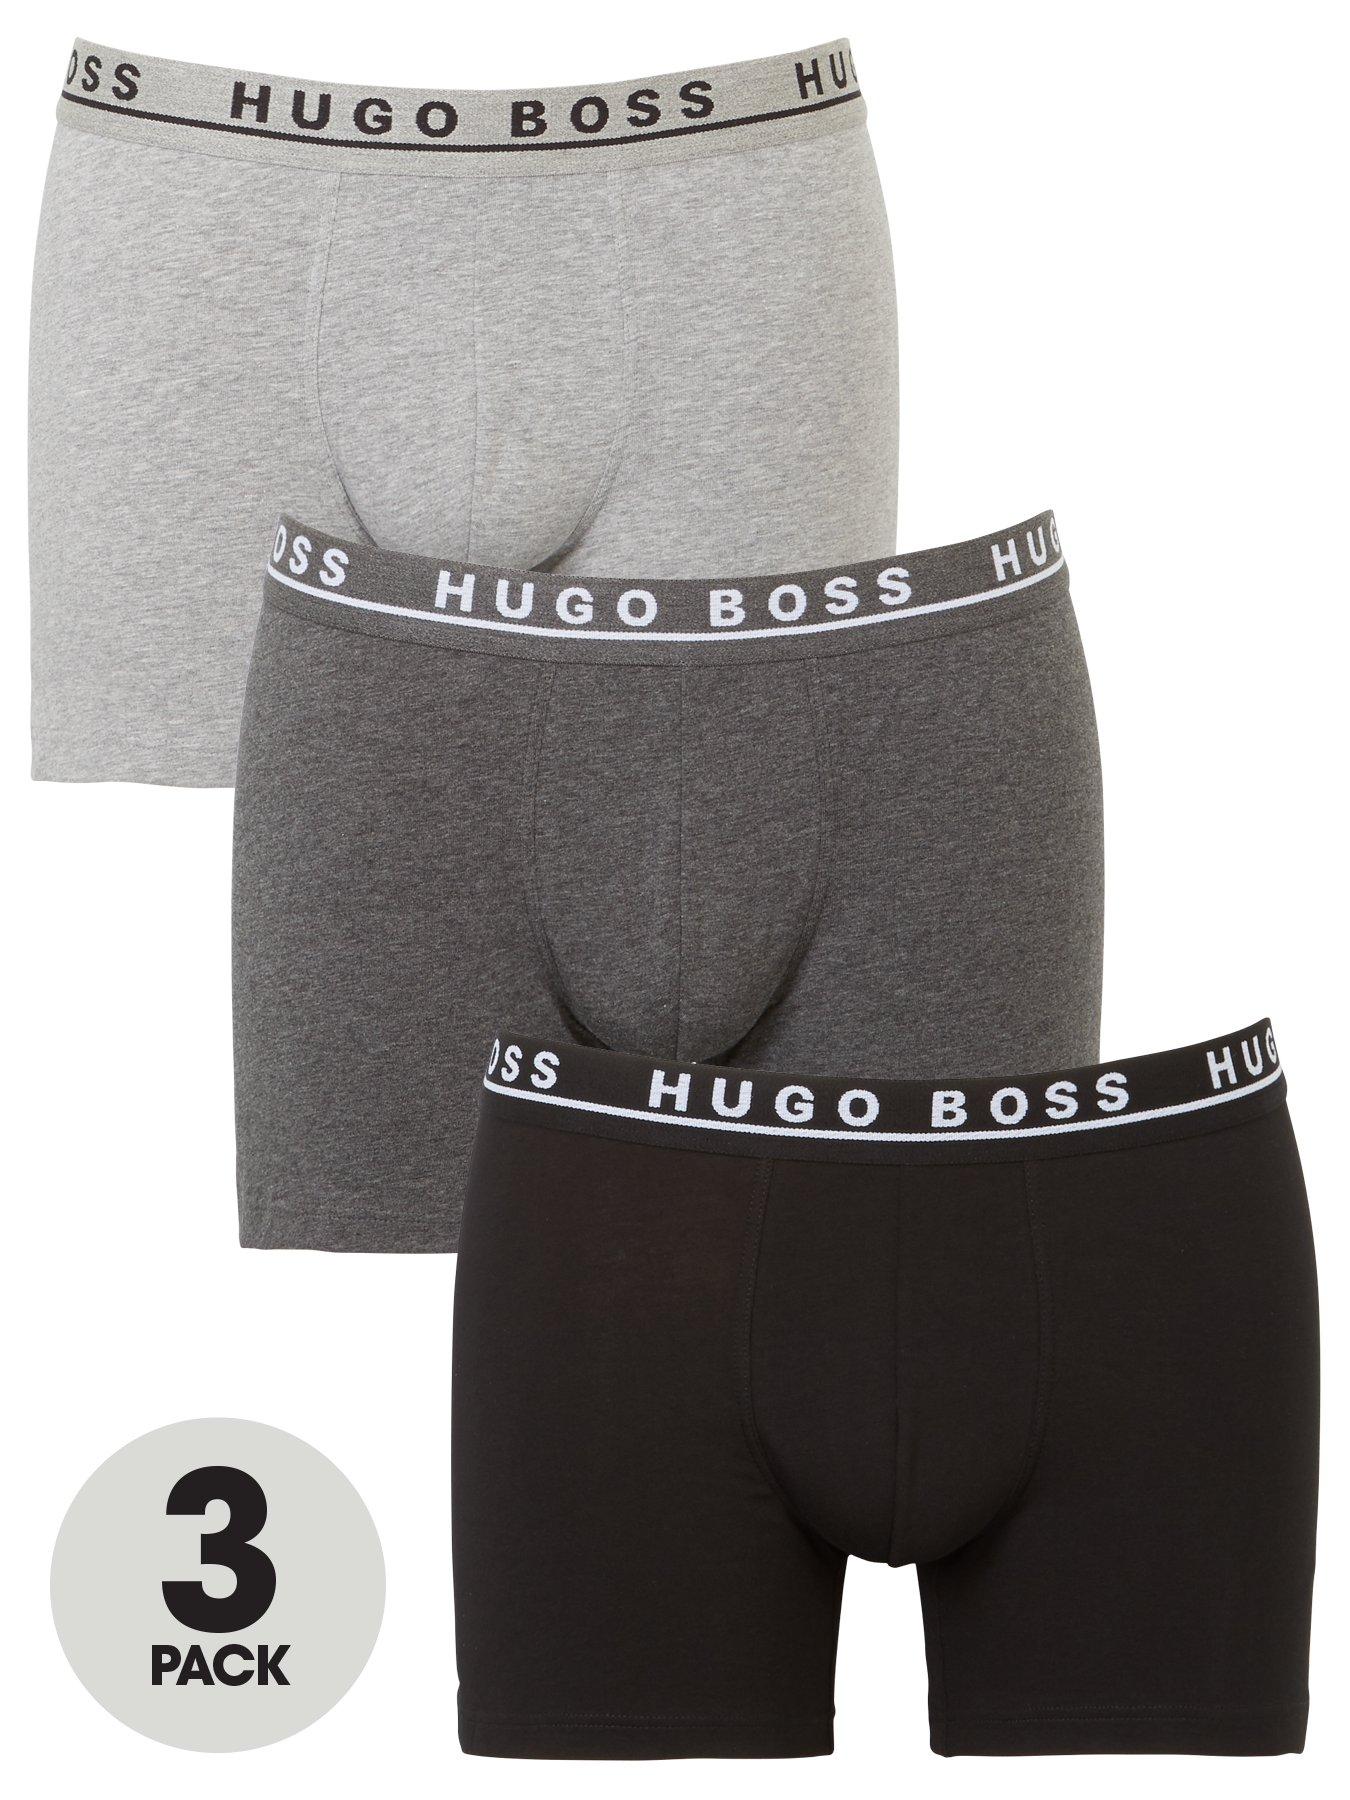 Underwear & Socks Boxer Briefs (3 Pack) - Grey/Black